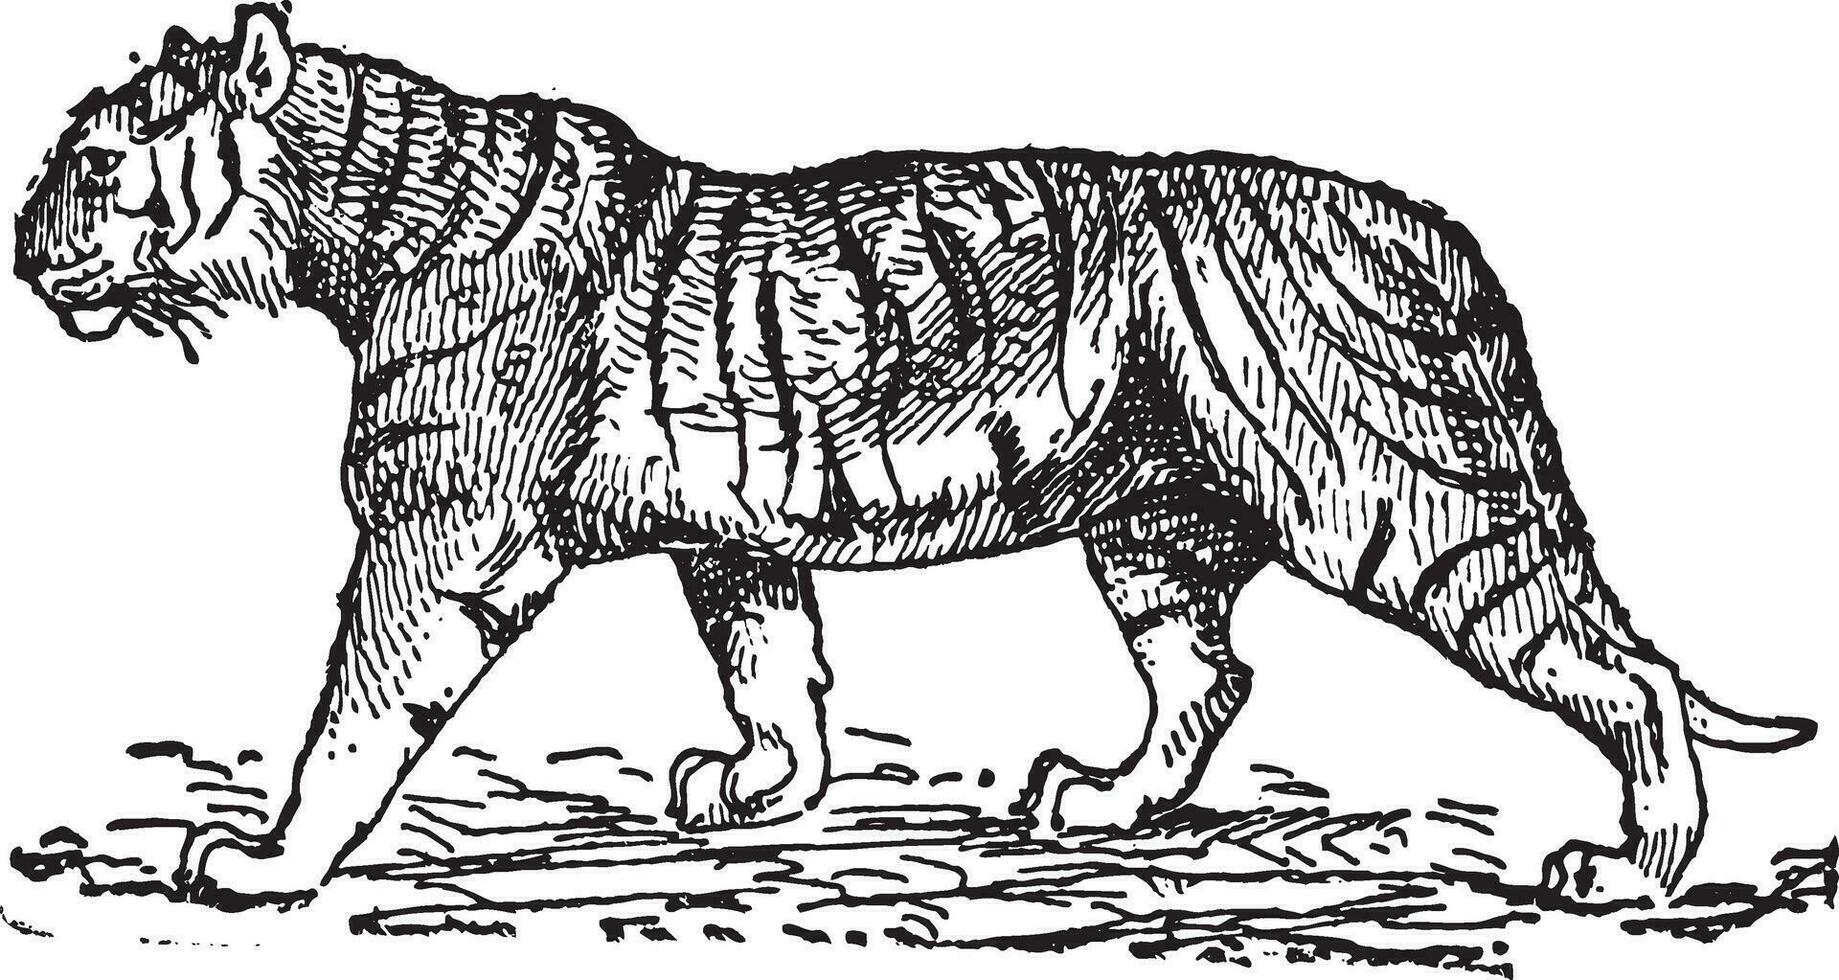 Tigre panthera tigris, Clásico grabado. vector